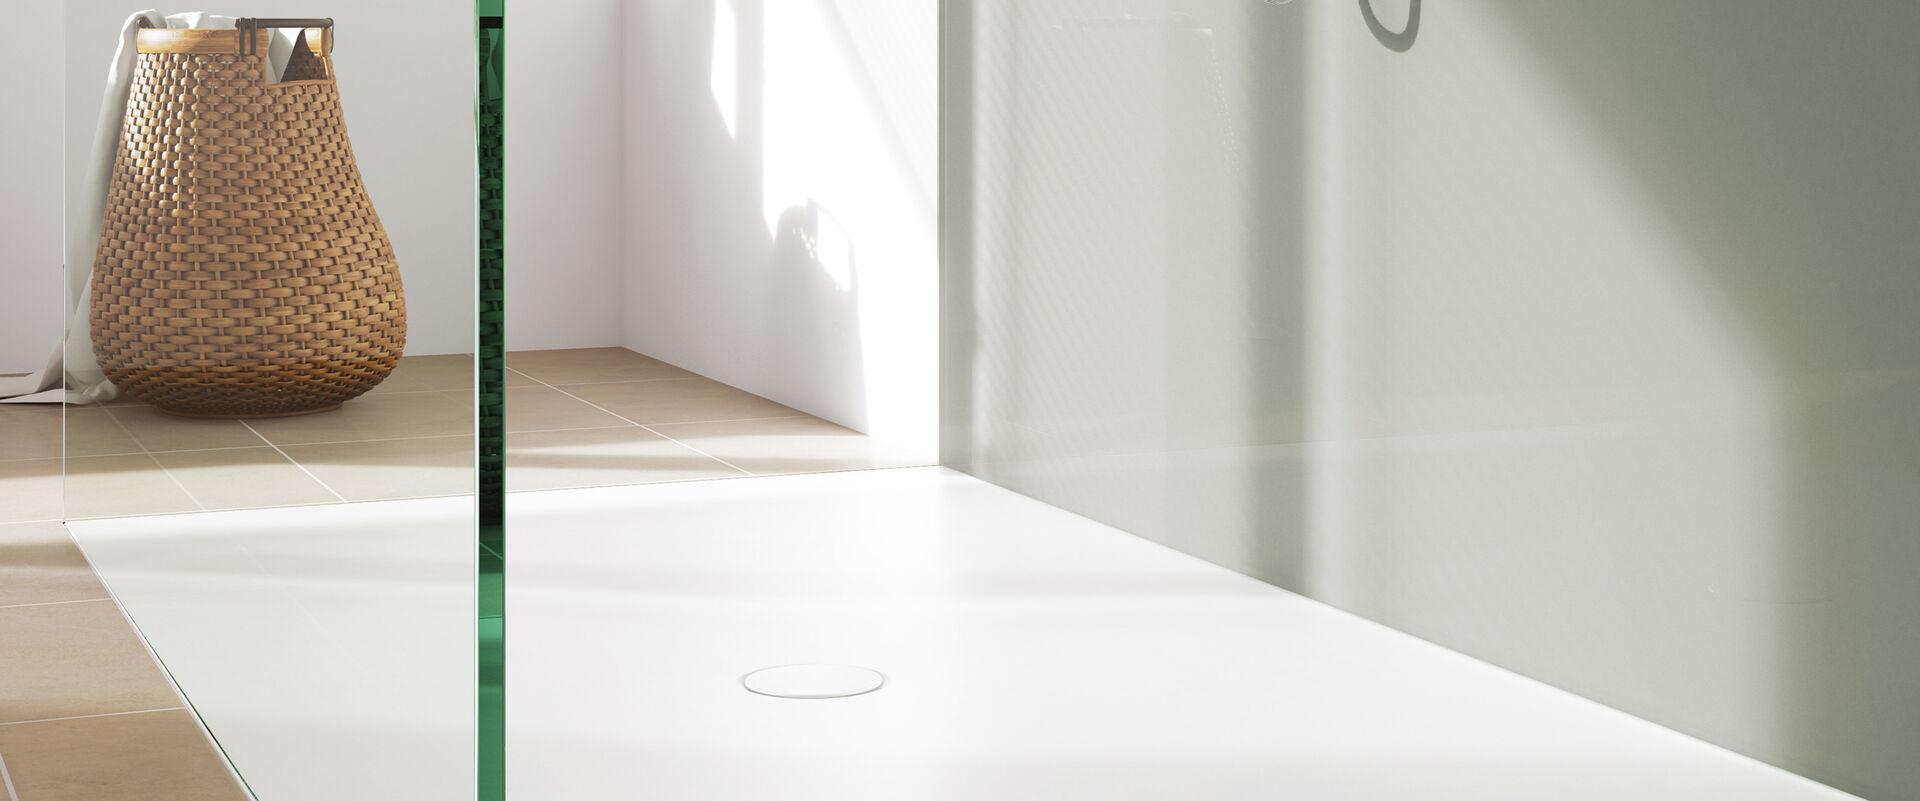 Nahaufnahme einer Kaldewei Ablaufgarnitur AK90, die in einer Dusche mit Glaswand integriert ist. Die Dusche steht in einem Raum mit Holzboden, im Hintergrund ist ein Designobjekt zu erkennen.